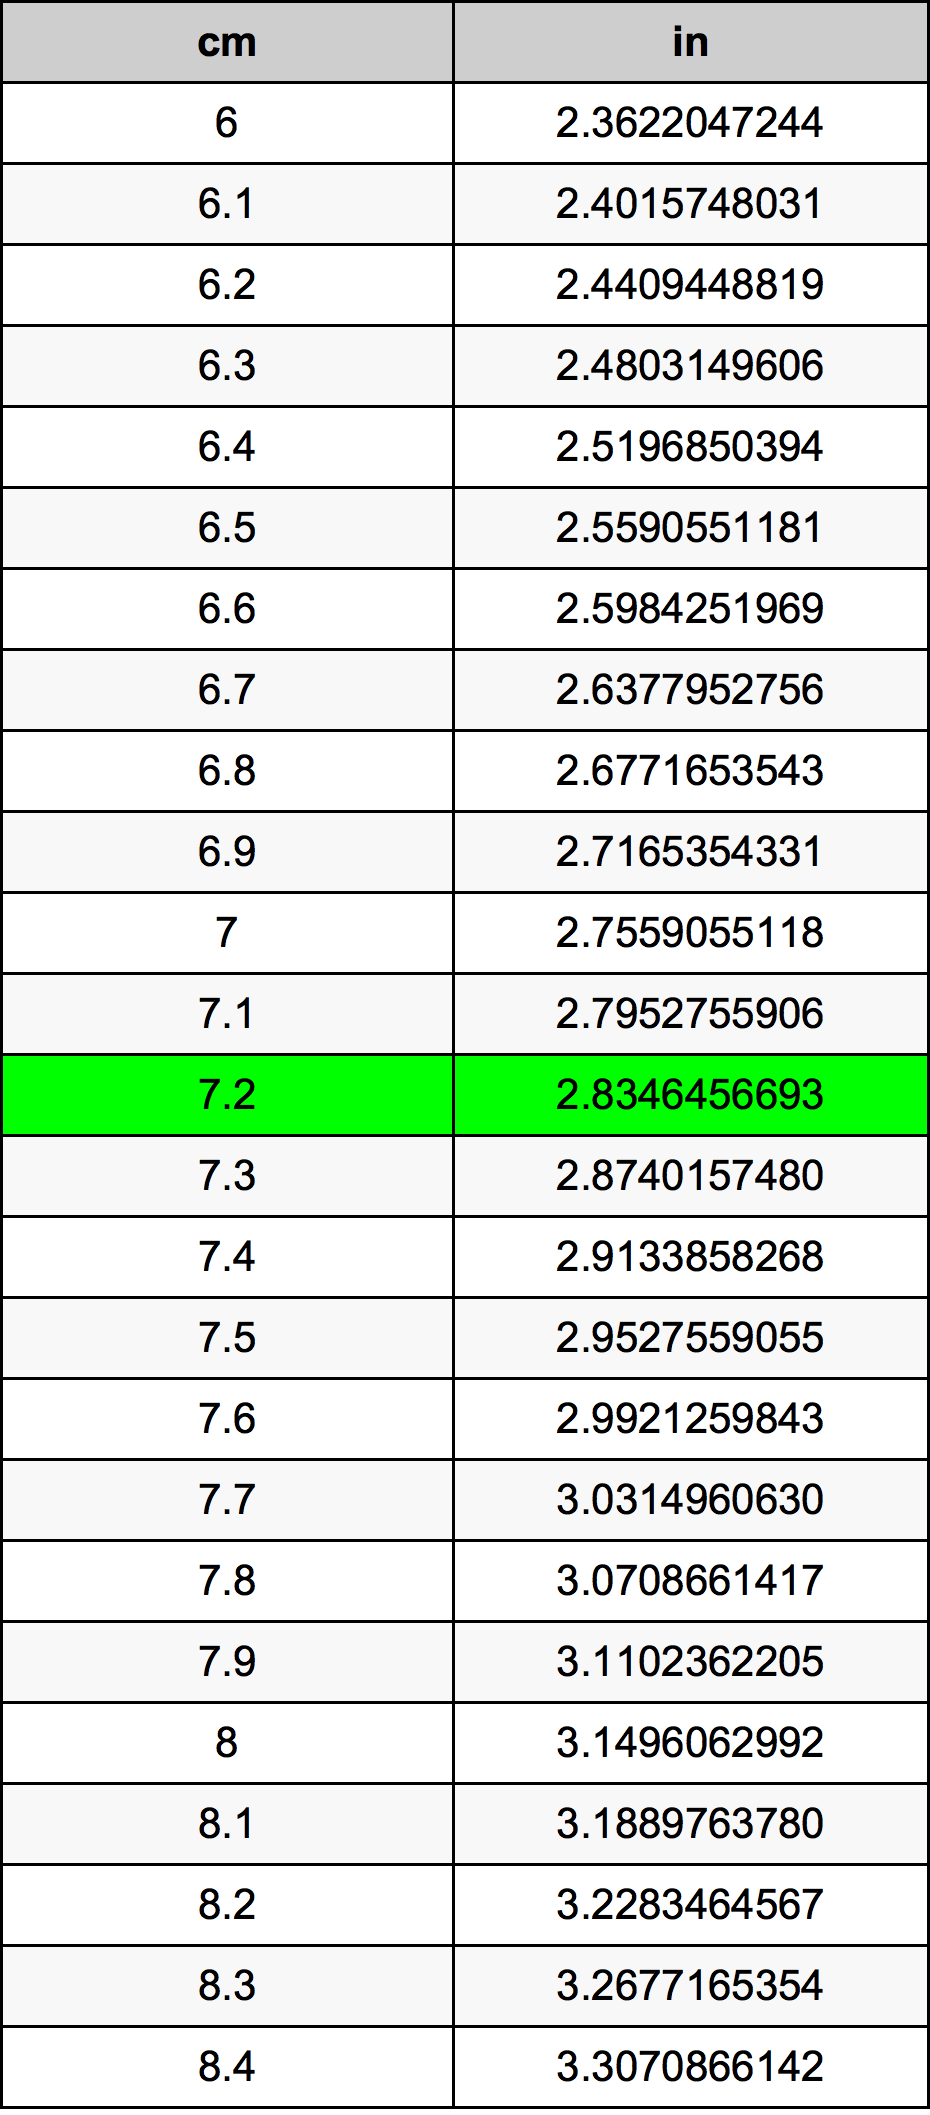 7.2 Centiméter átszámítási táblázat